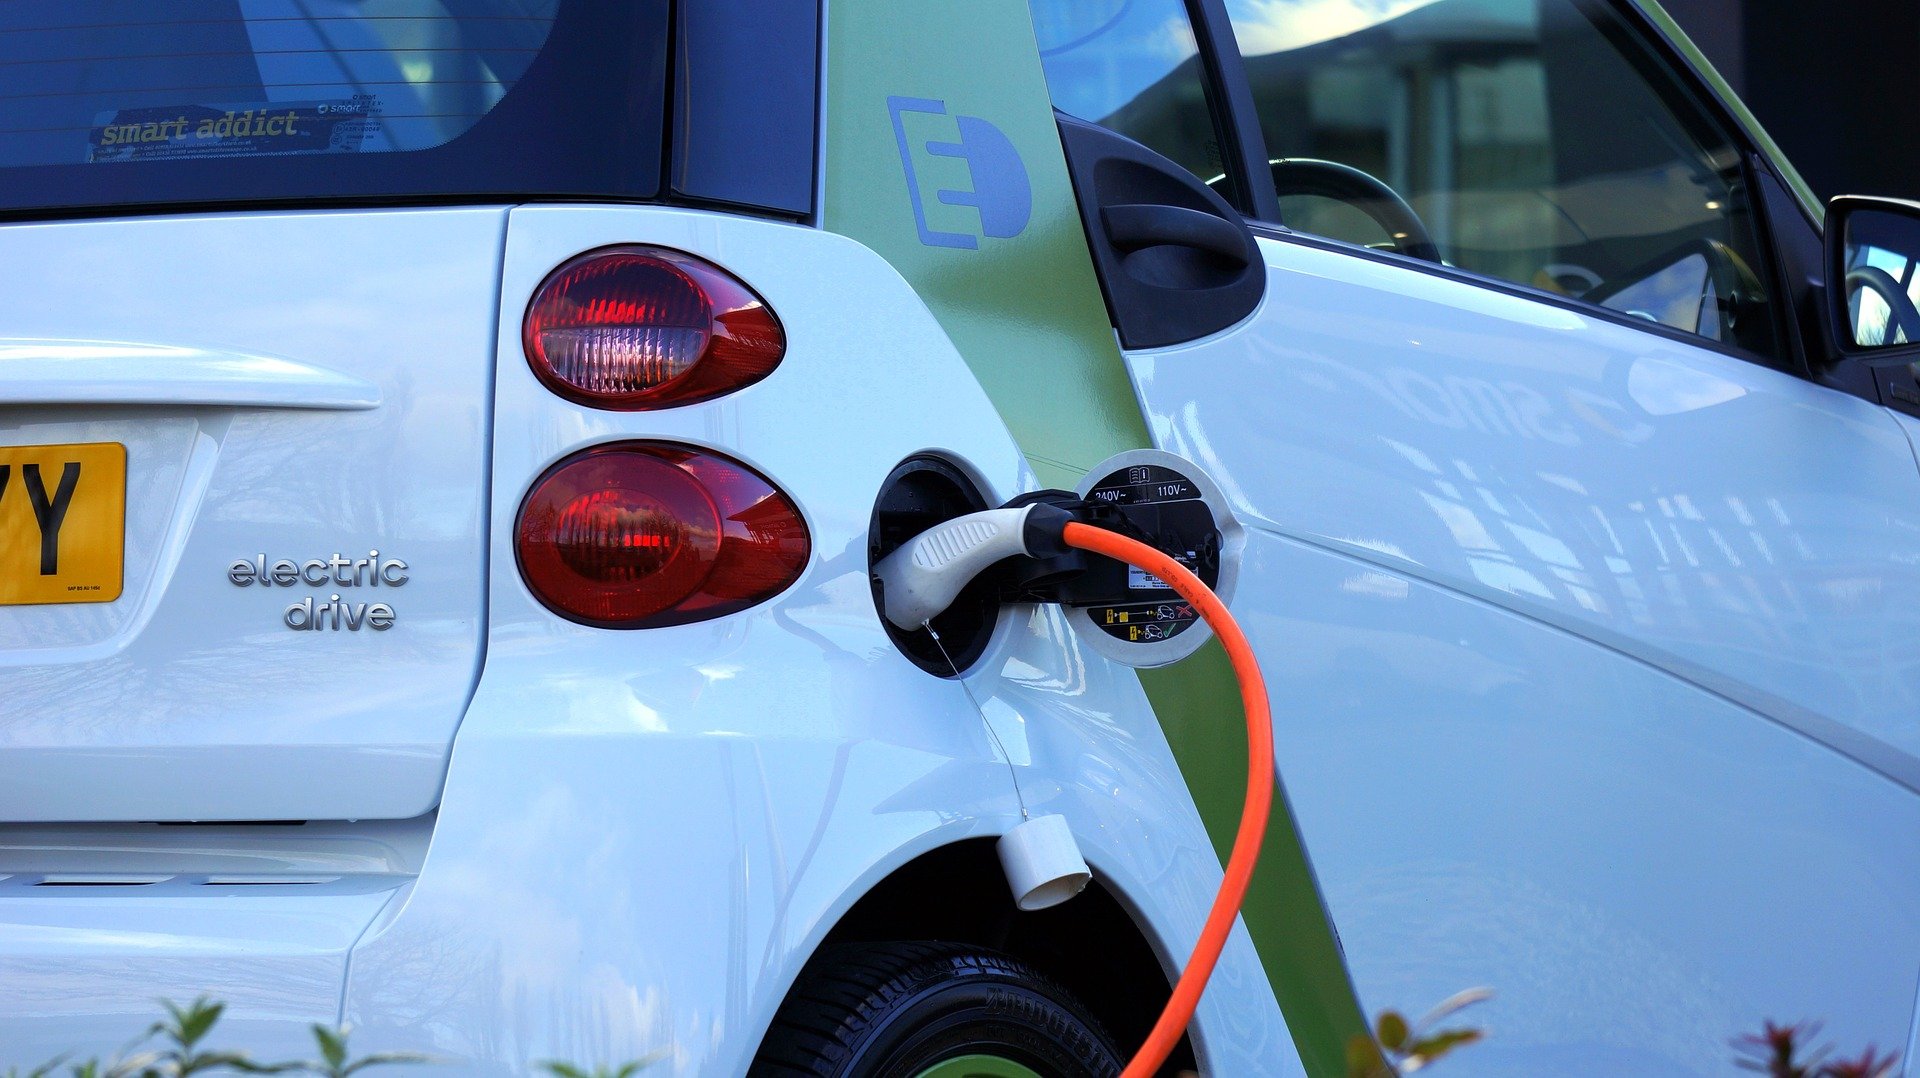 monde consommateurs prets acheter voiture electrique - L'Energeek